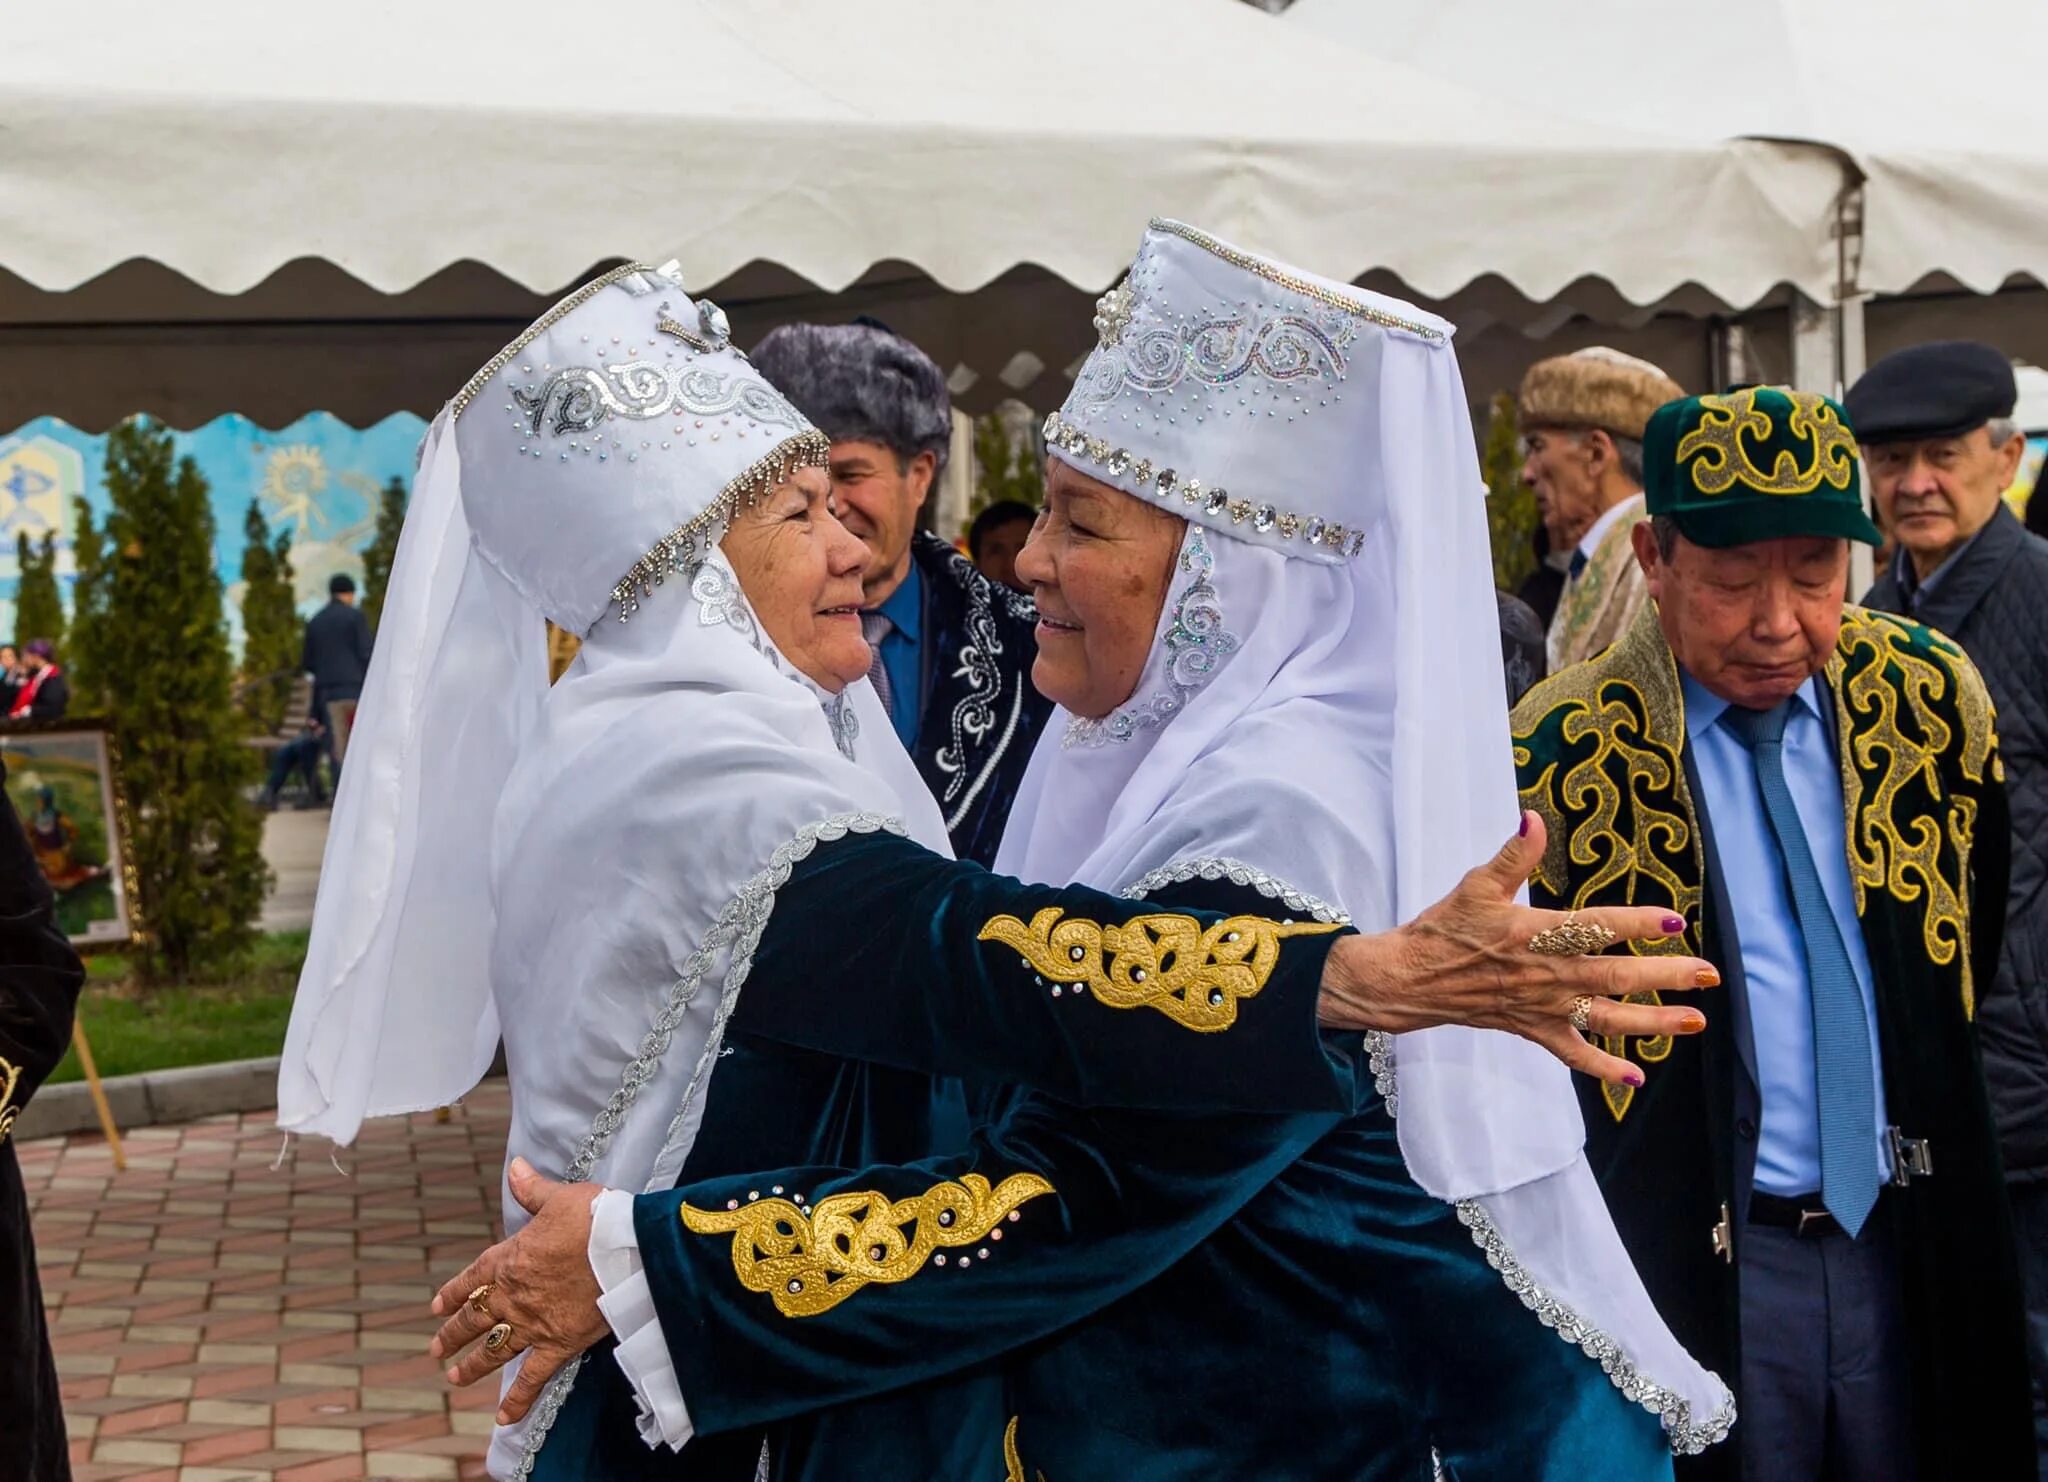 Праздник Көрісу күні. Корису айт казахский праздник. Көрісу күні картинки